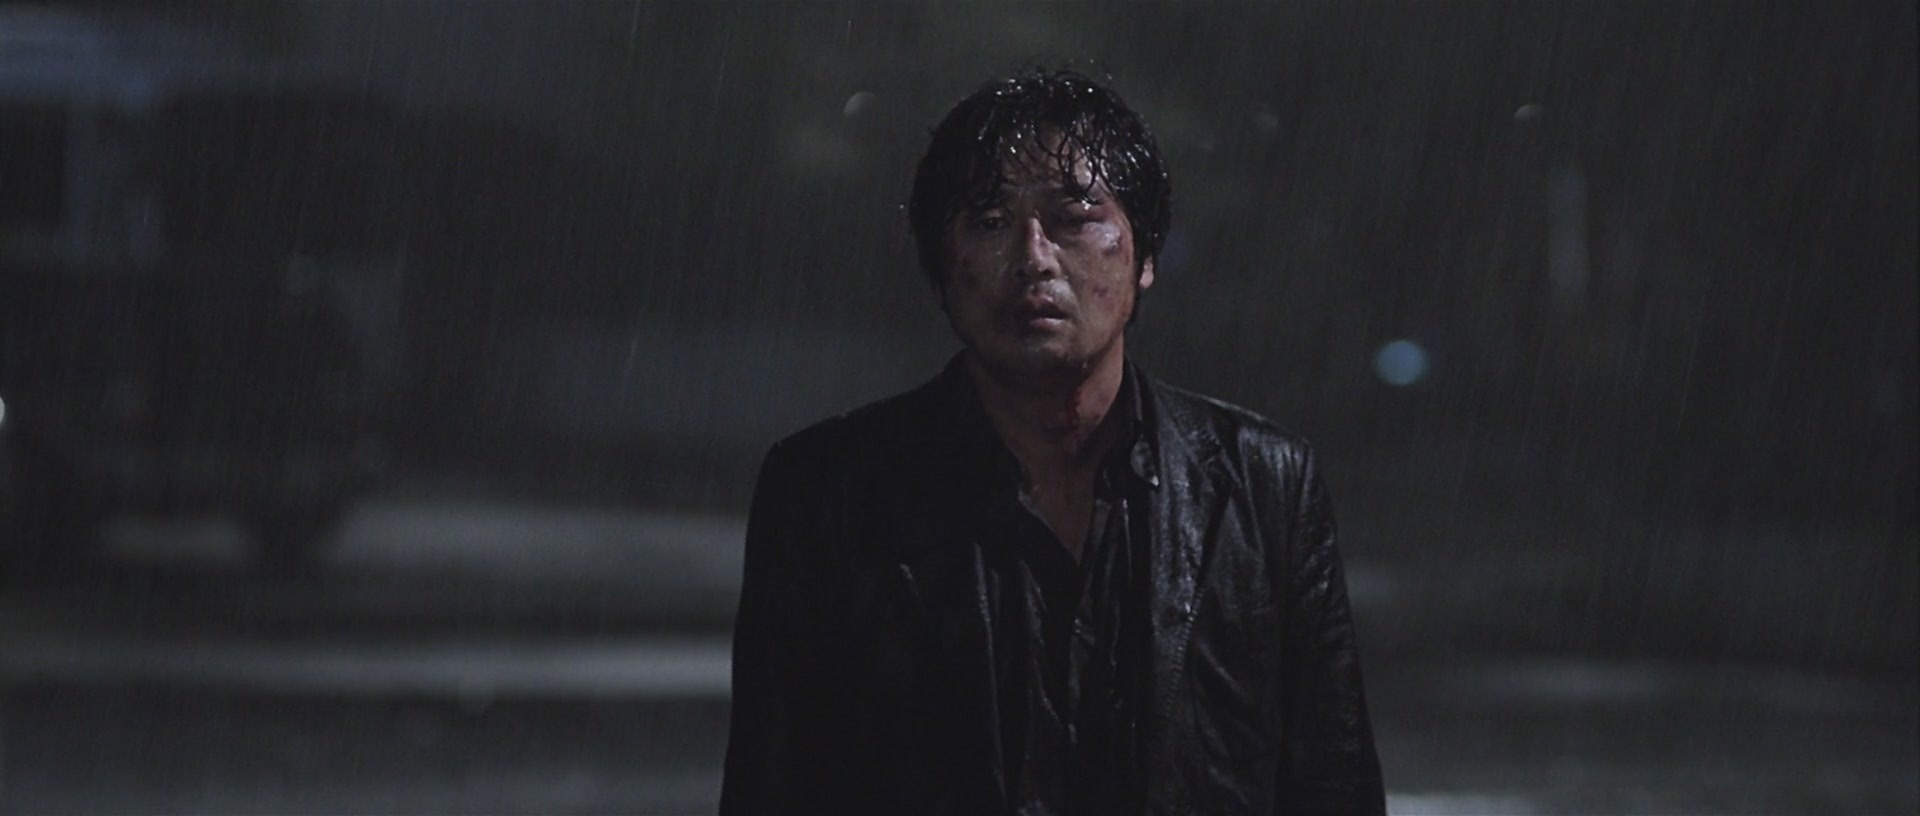 韩国最悲怆的犯罪电影，凶残杀手超越崔岷植的《看见恶魔》